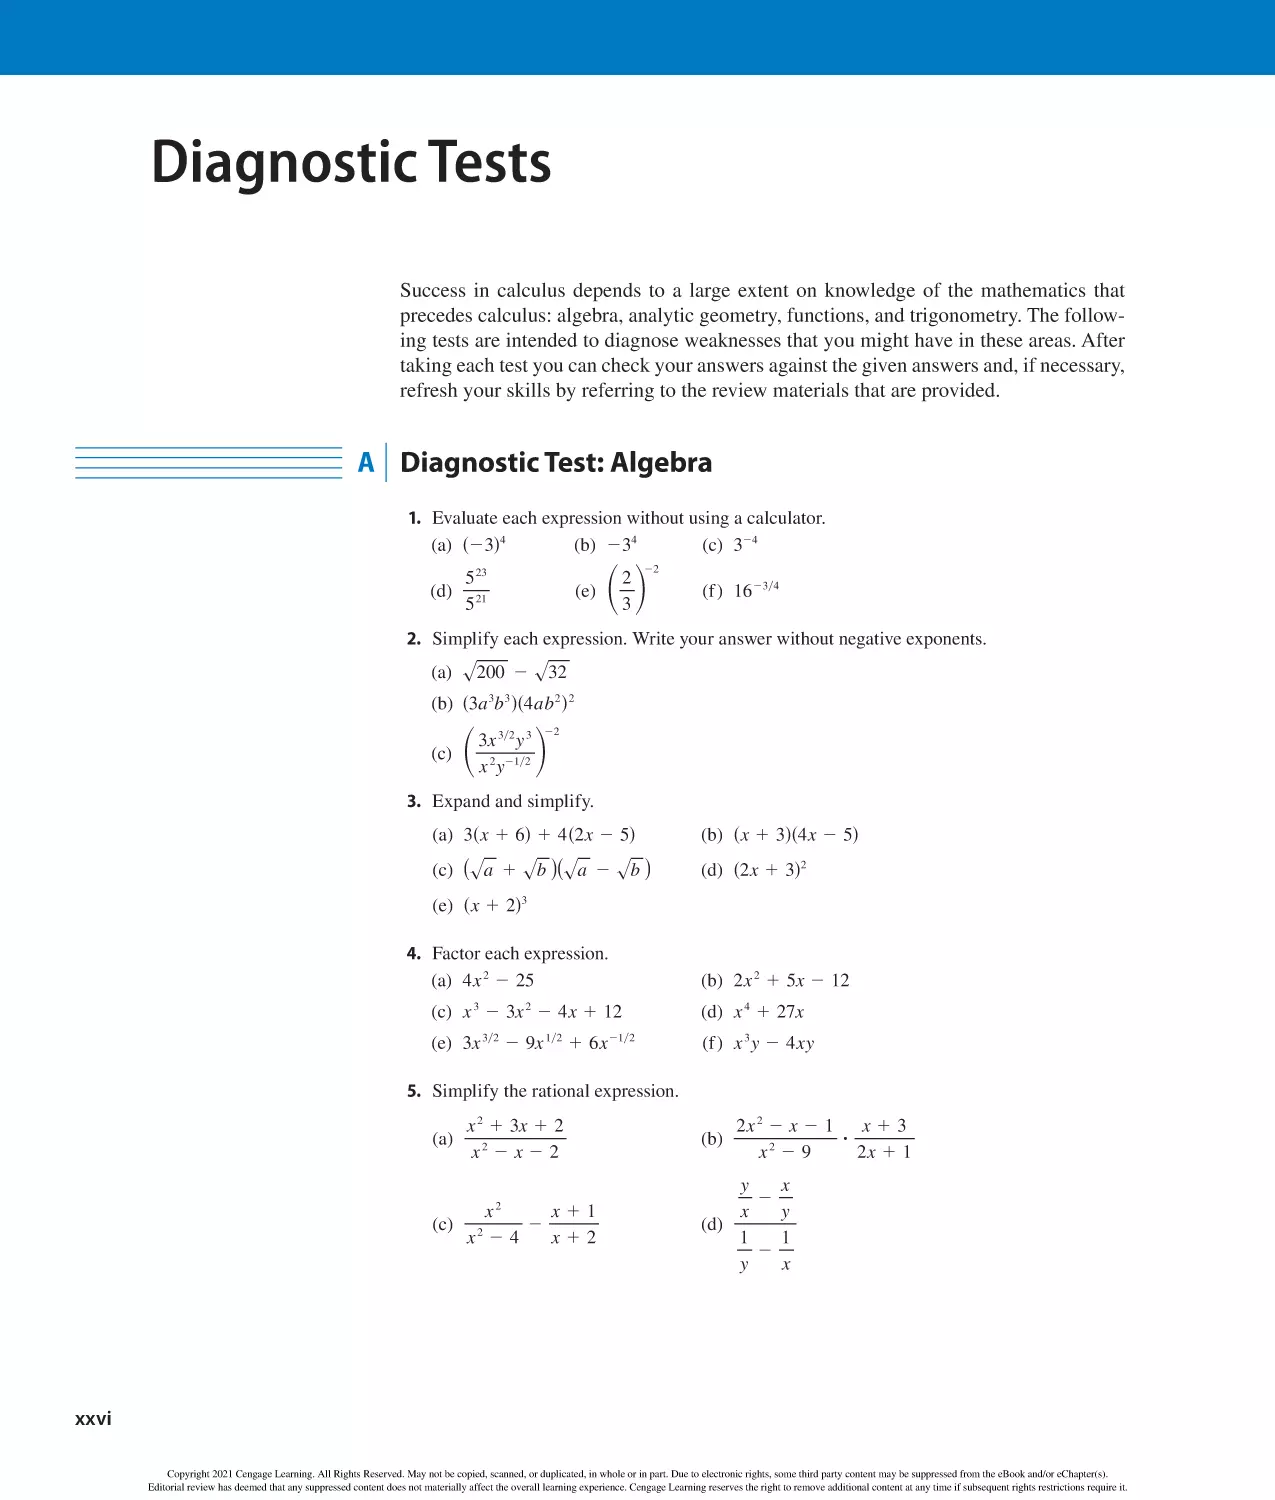 Diagnostic Tests
A